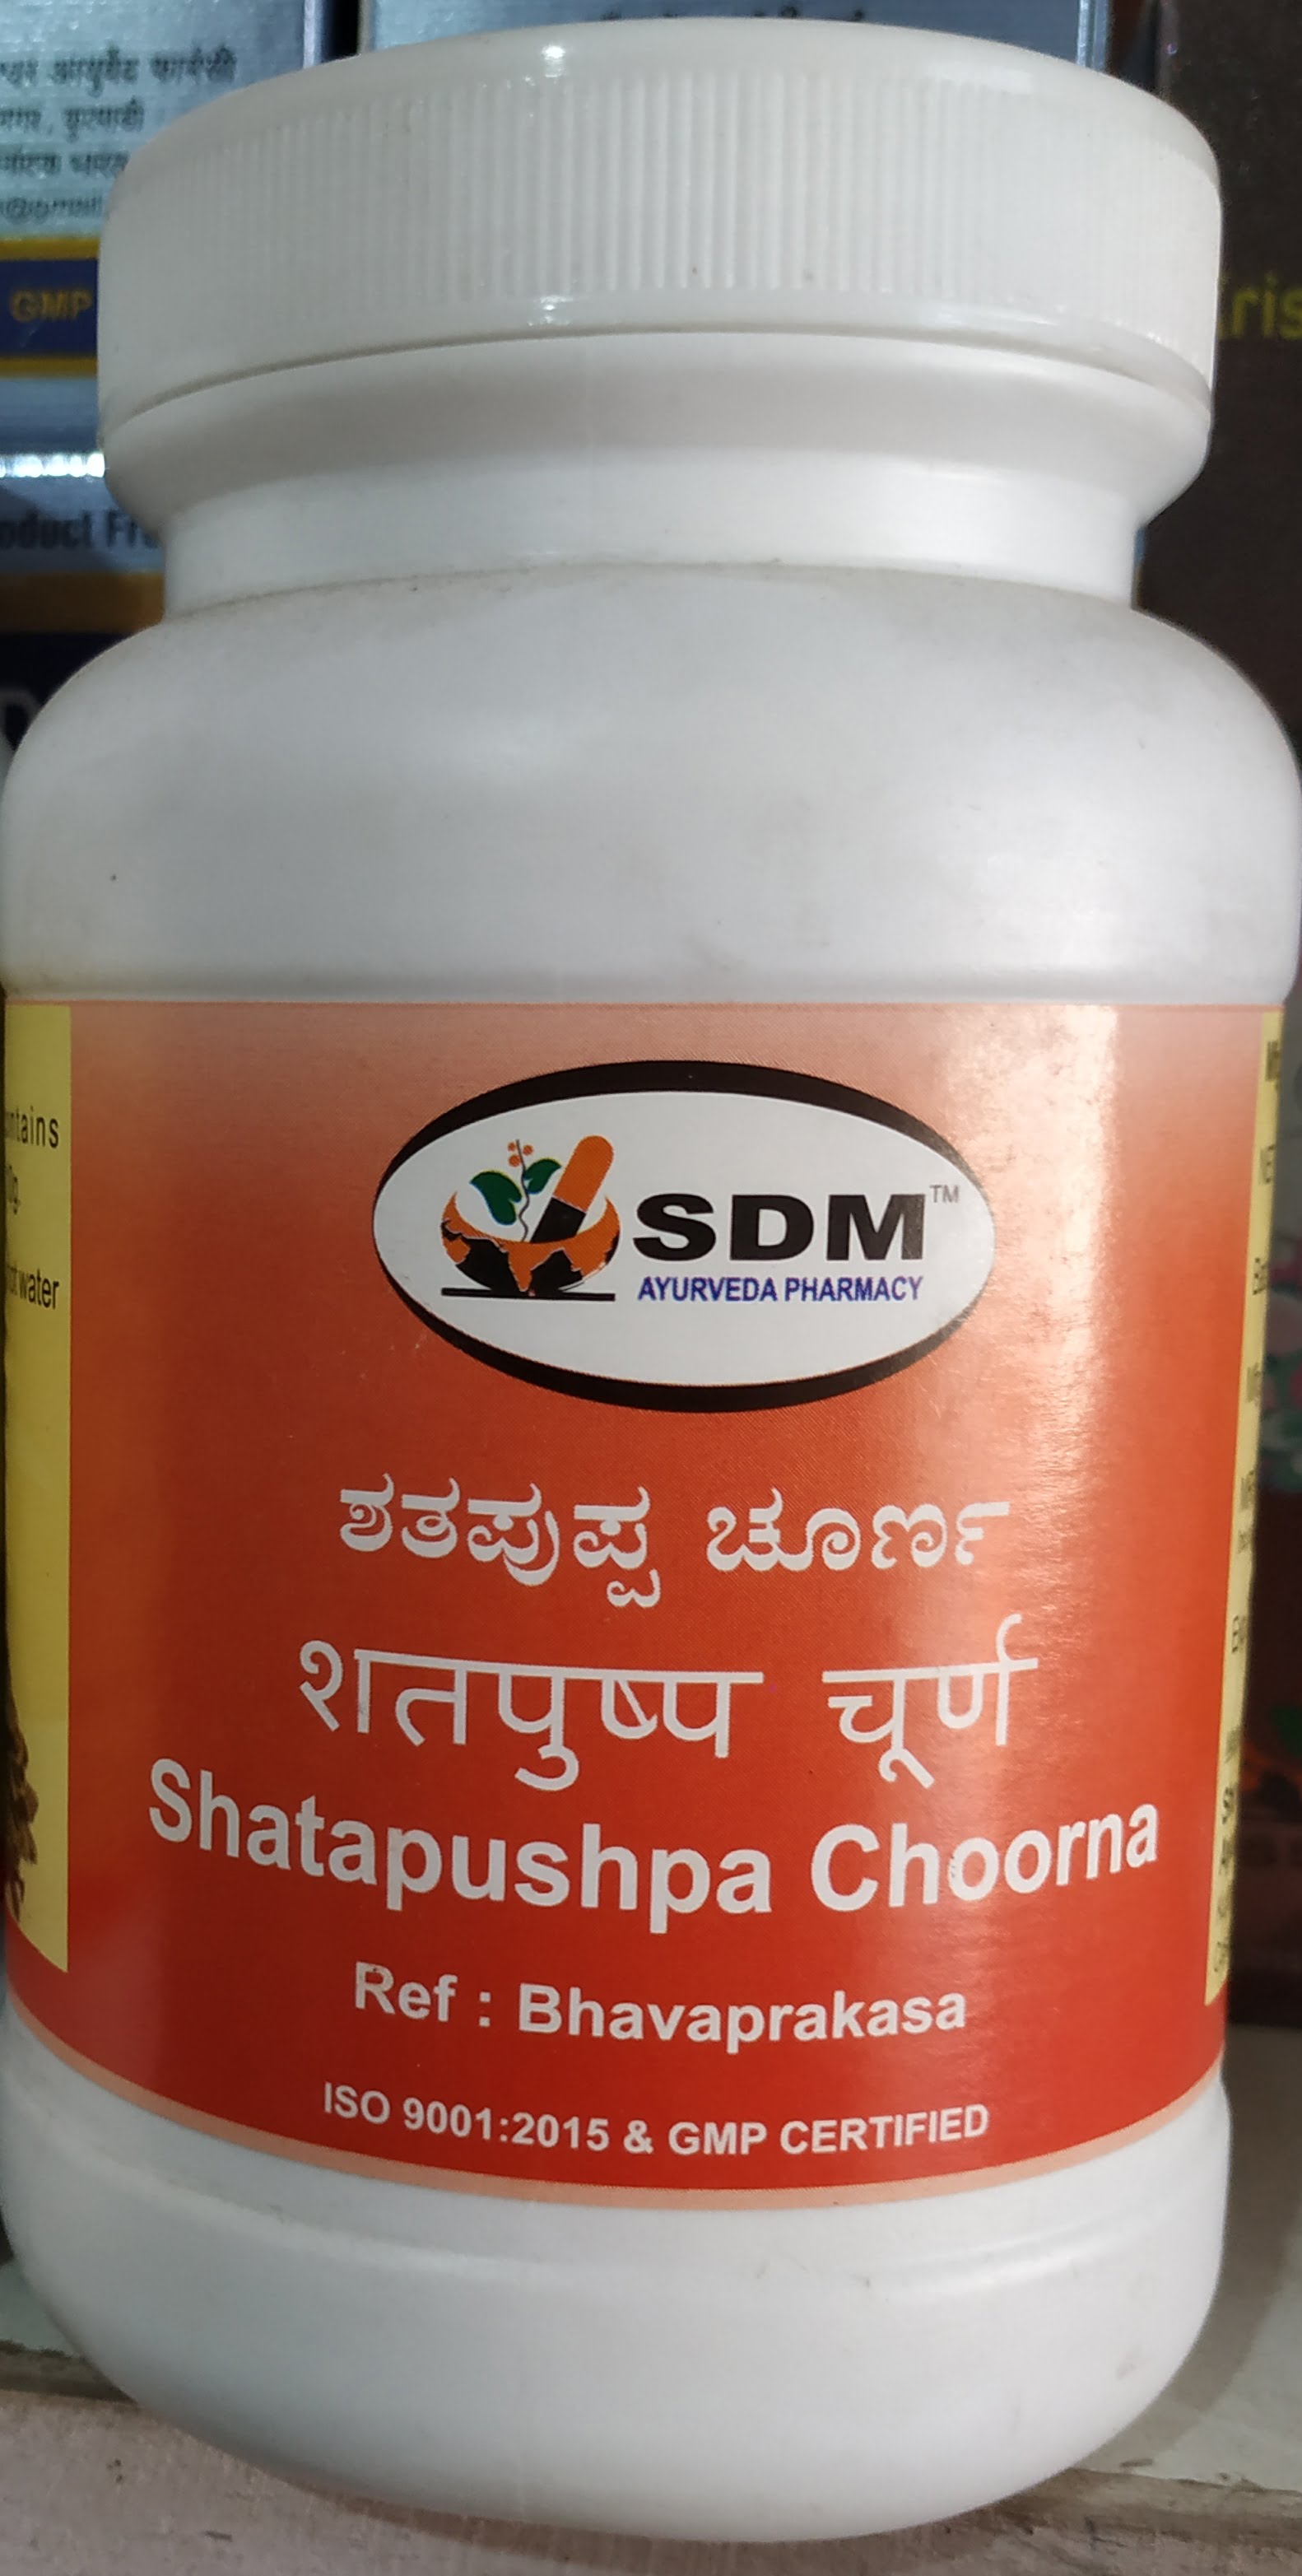 shatapushpa choorna 1kg upto 20% off sdm ayurvedya